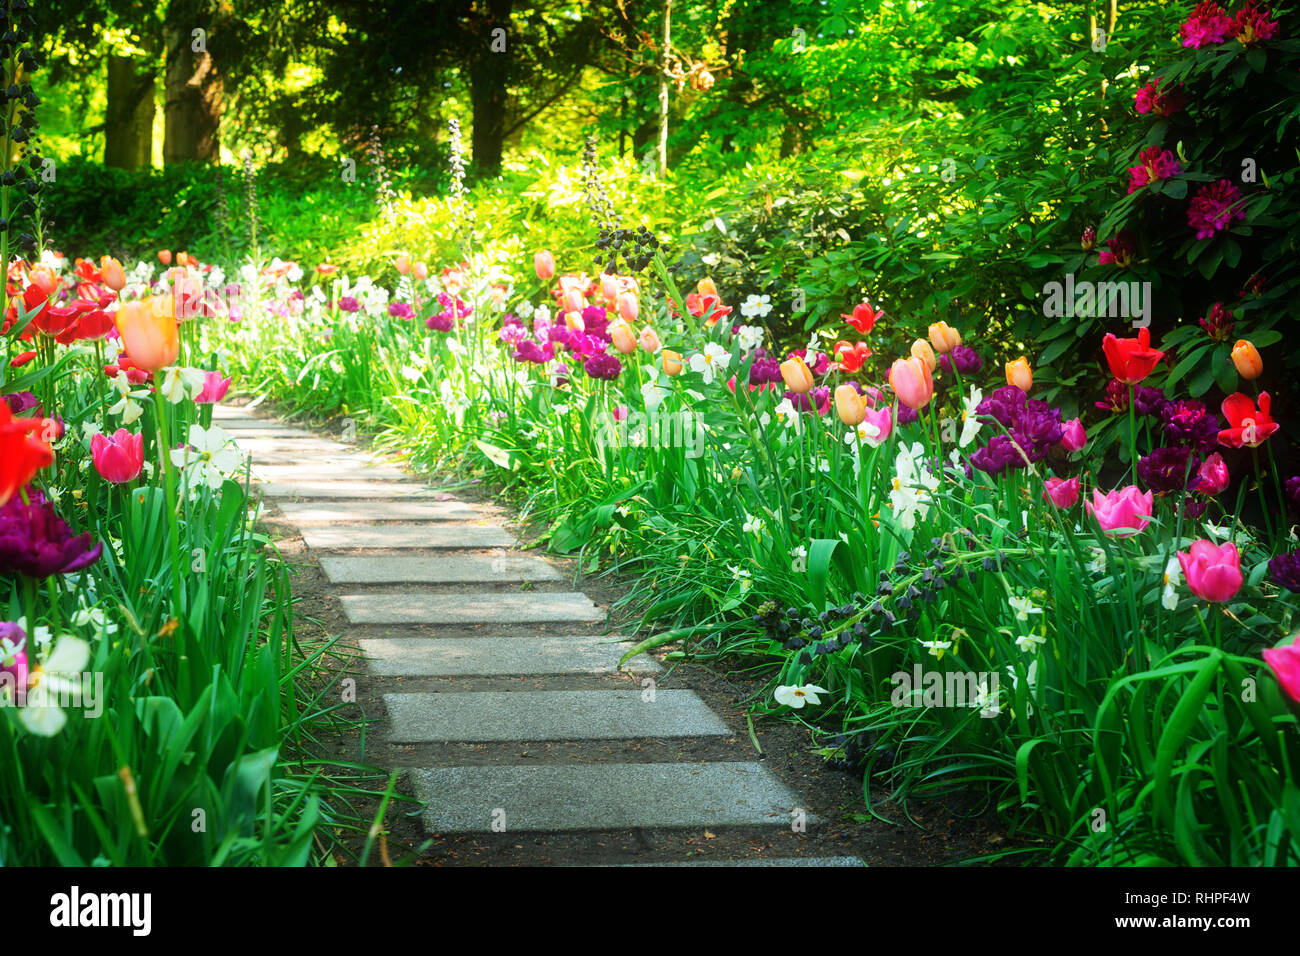 Formal spring garden Stock Photo